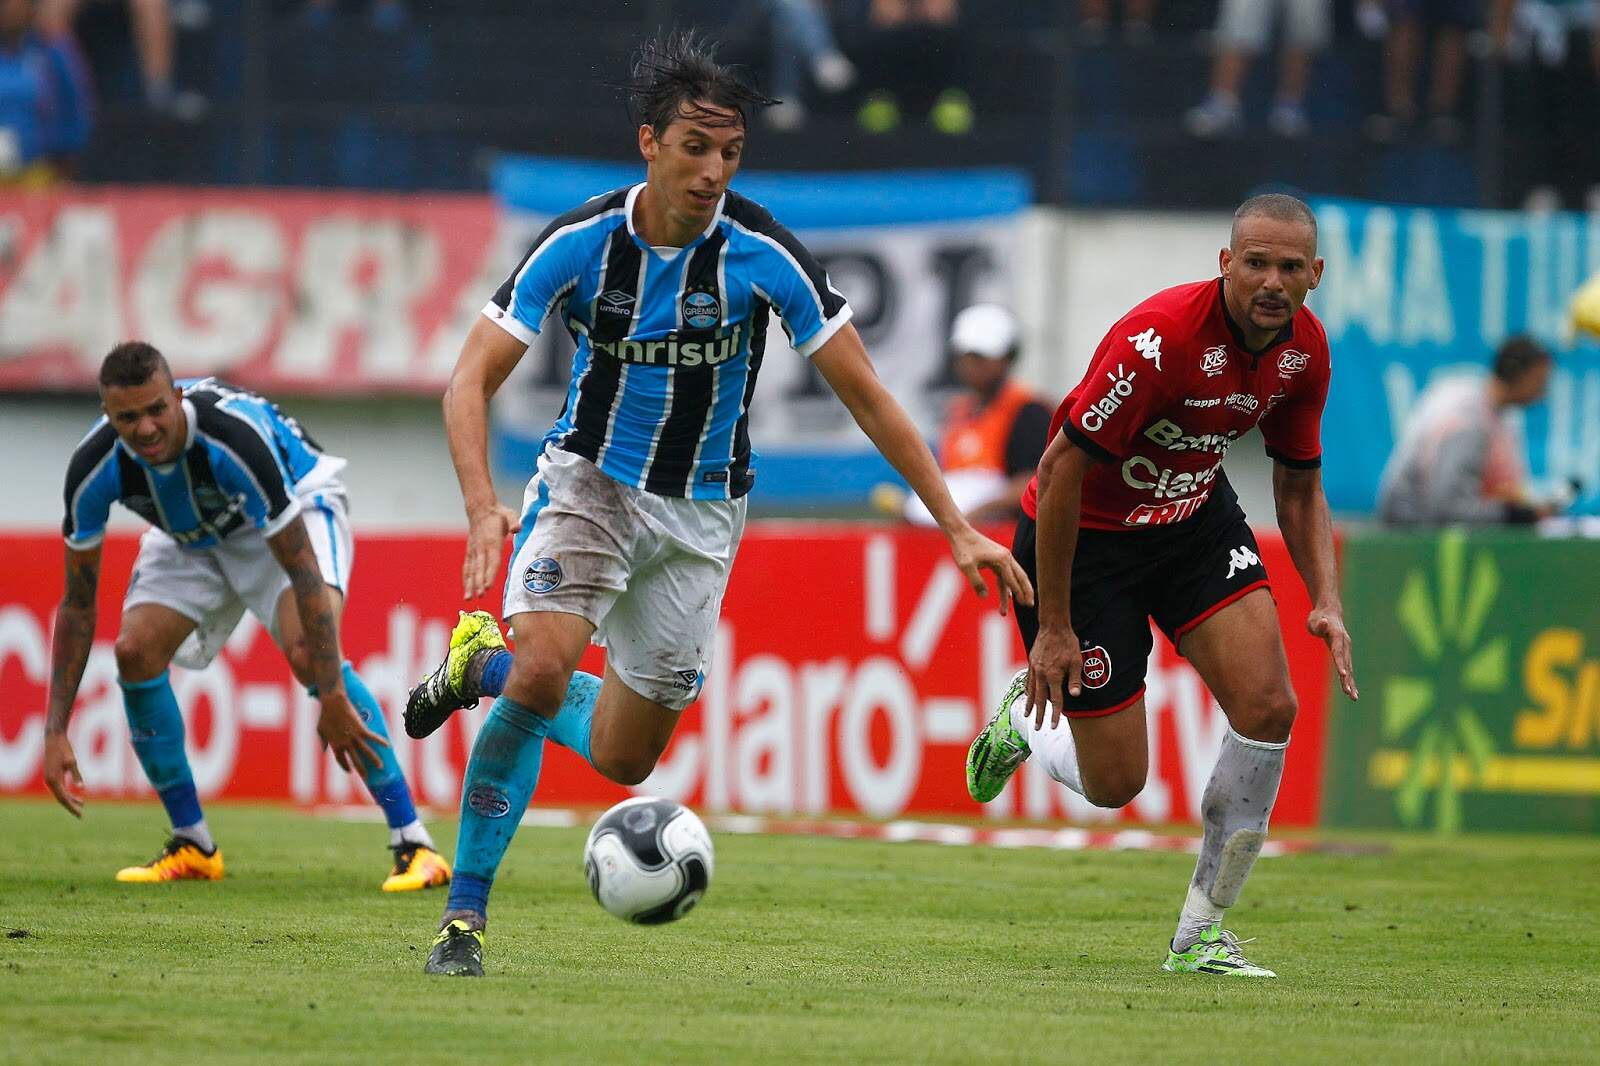 Flamengo vs Vélez Sársfield: A Clash of South American Titans